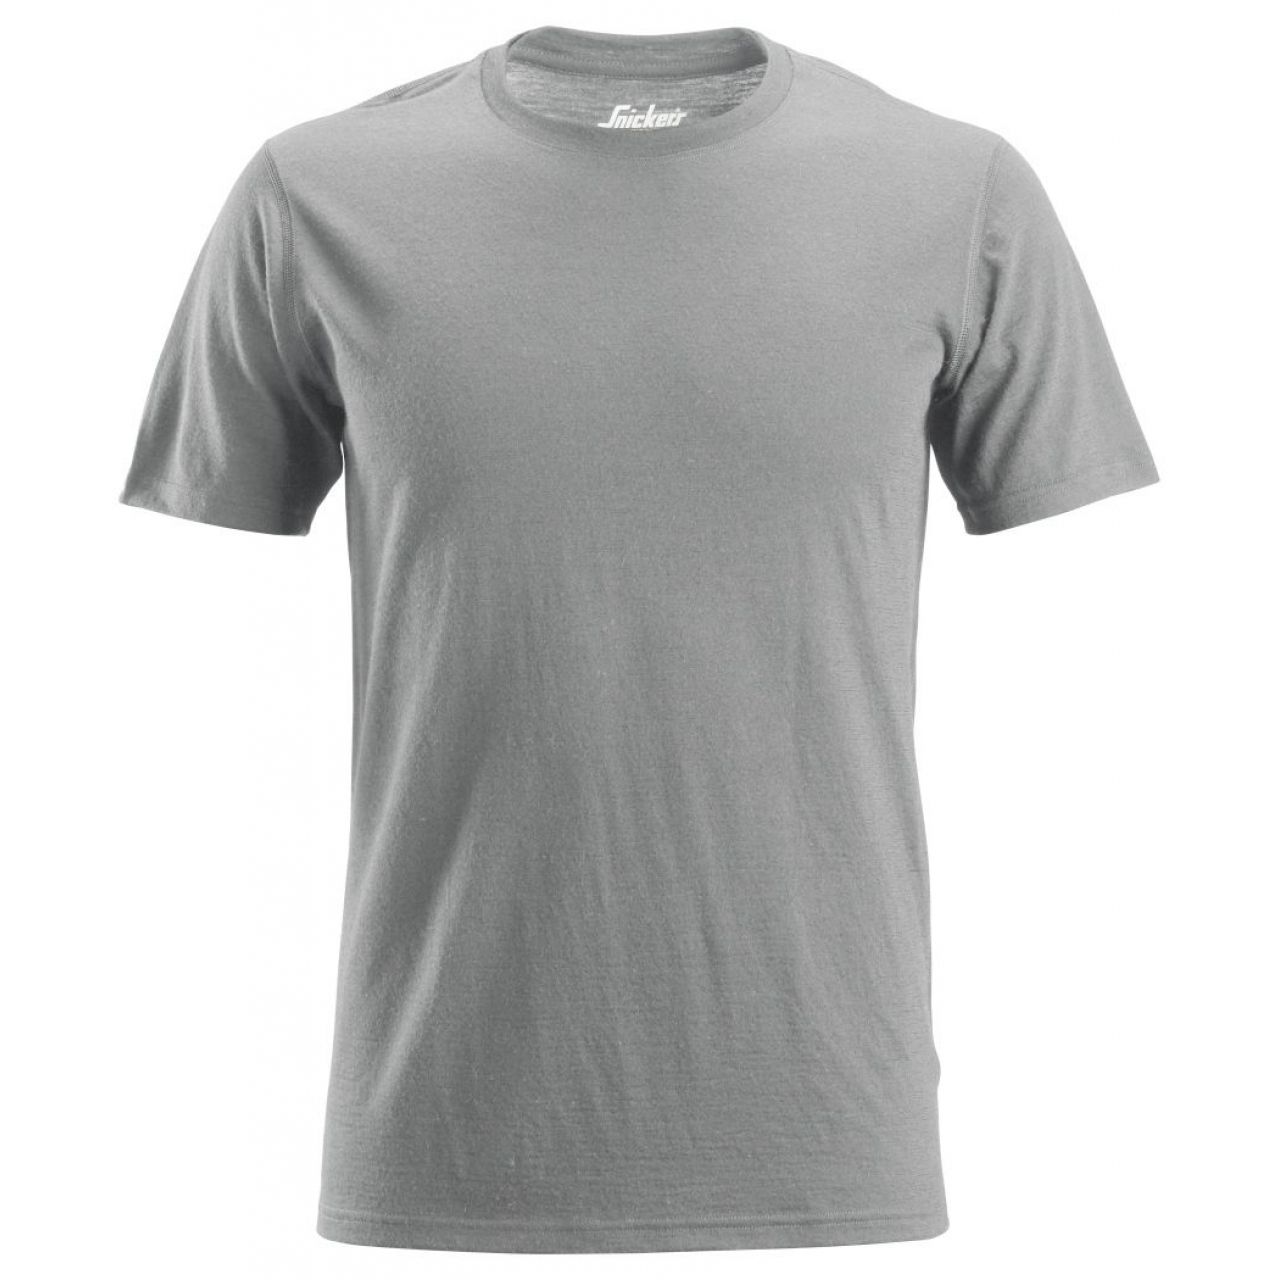 Camiseta lana AllroundWork gris melange talla XXXL